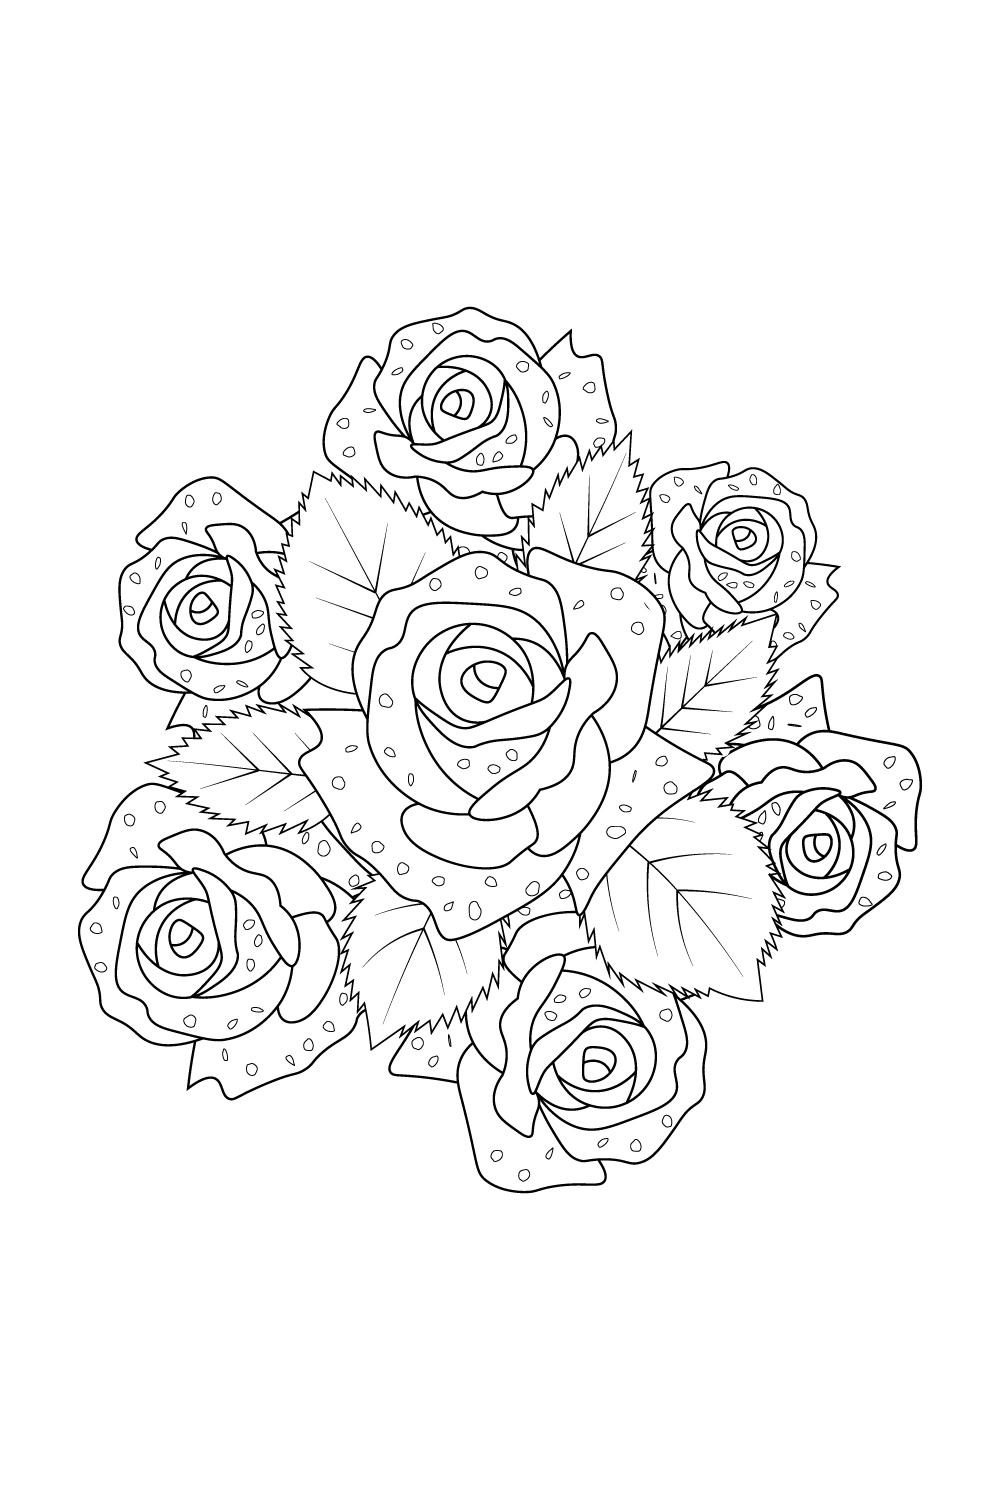 roses vine sketch